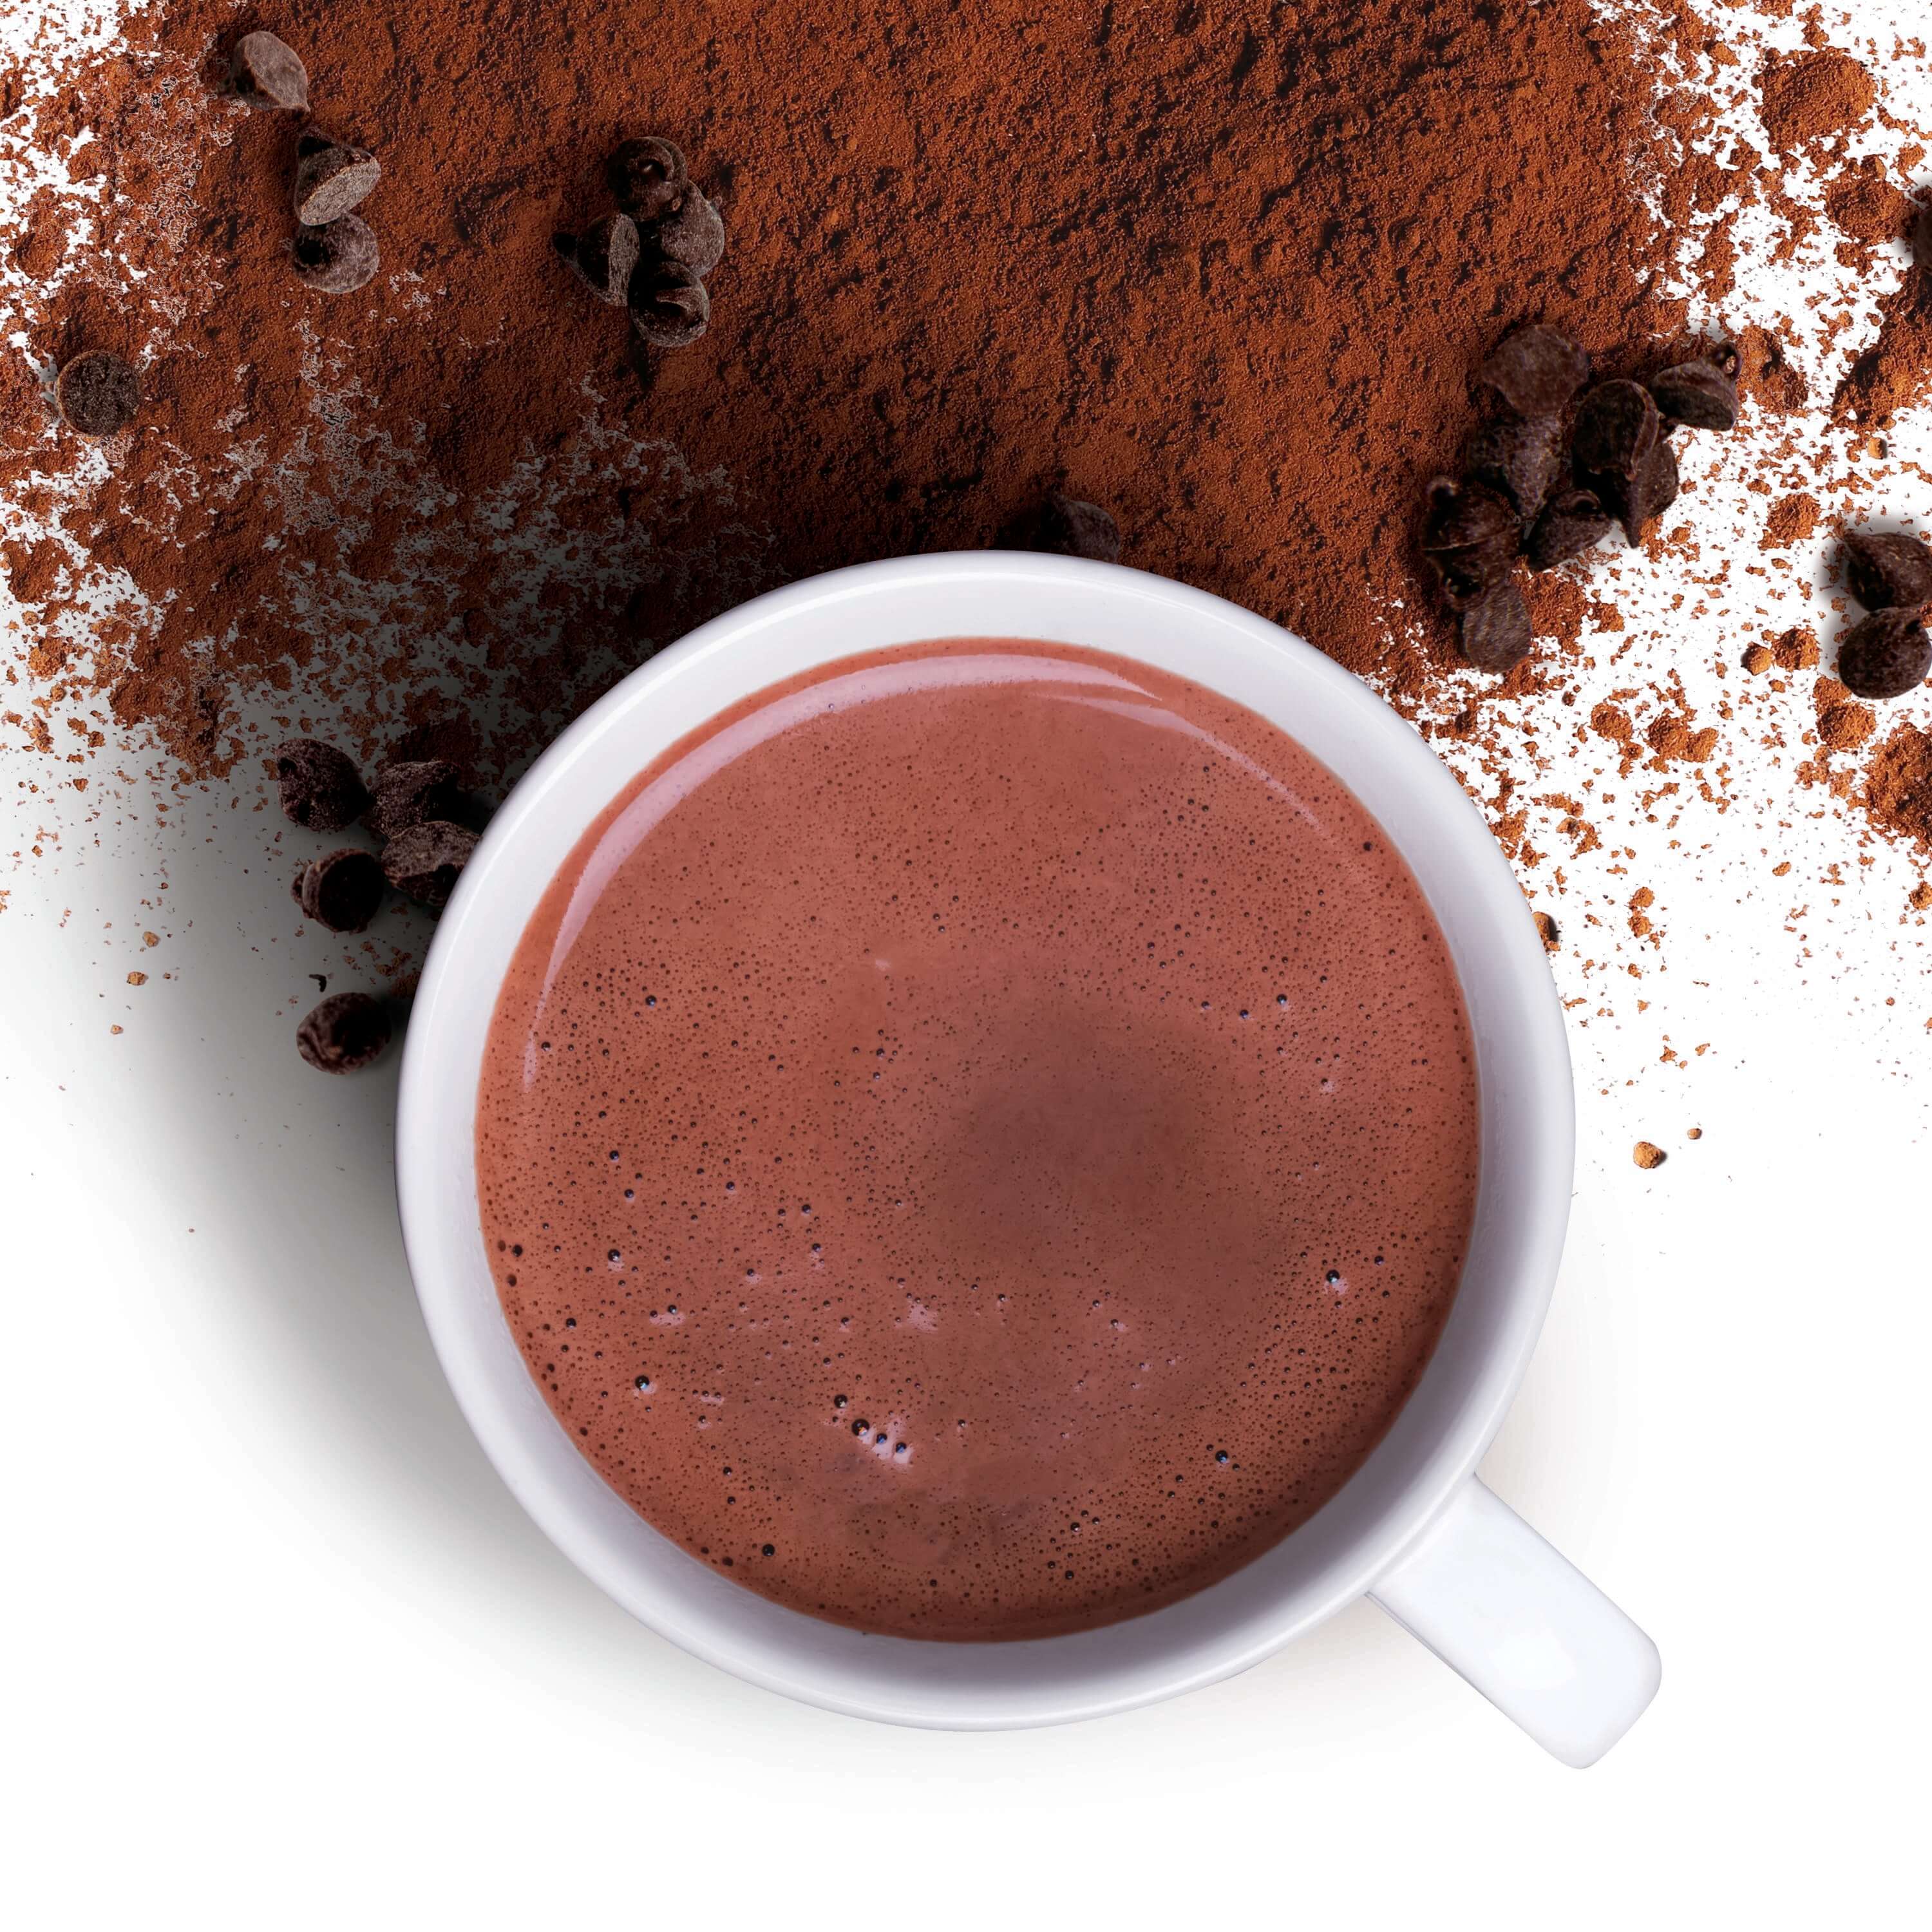 Valrhona Hot Chocolate Recipe